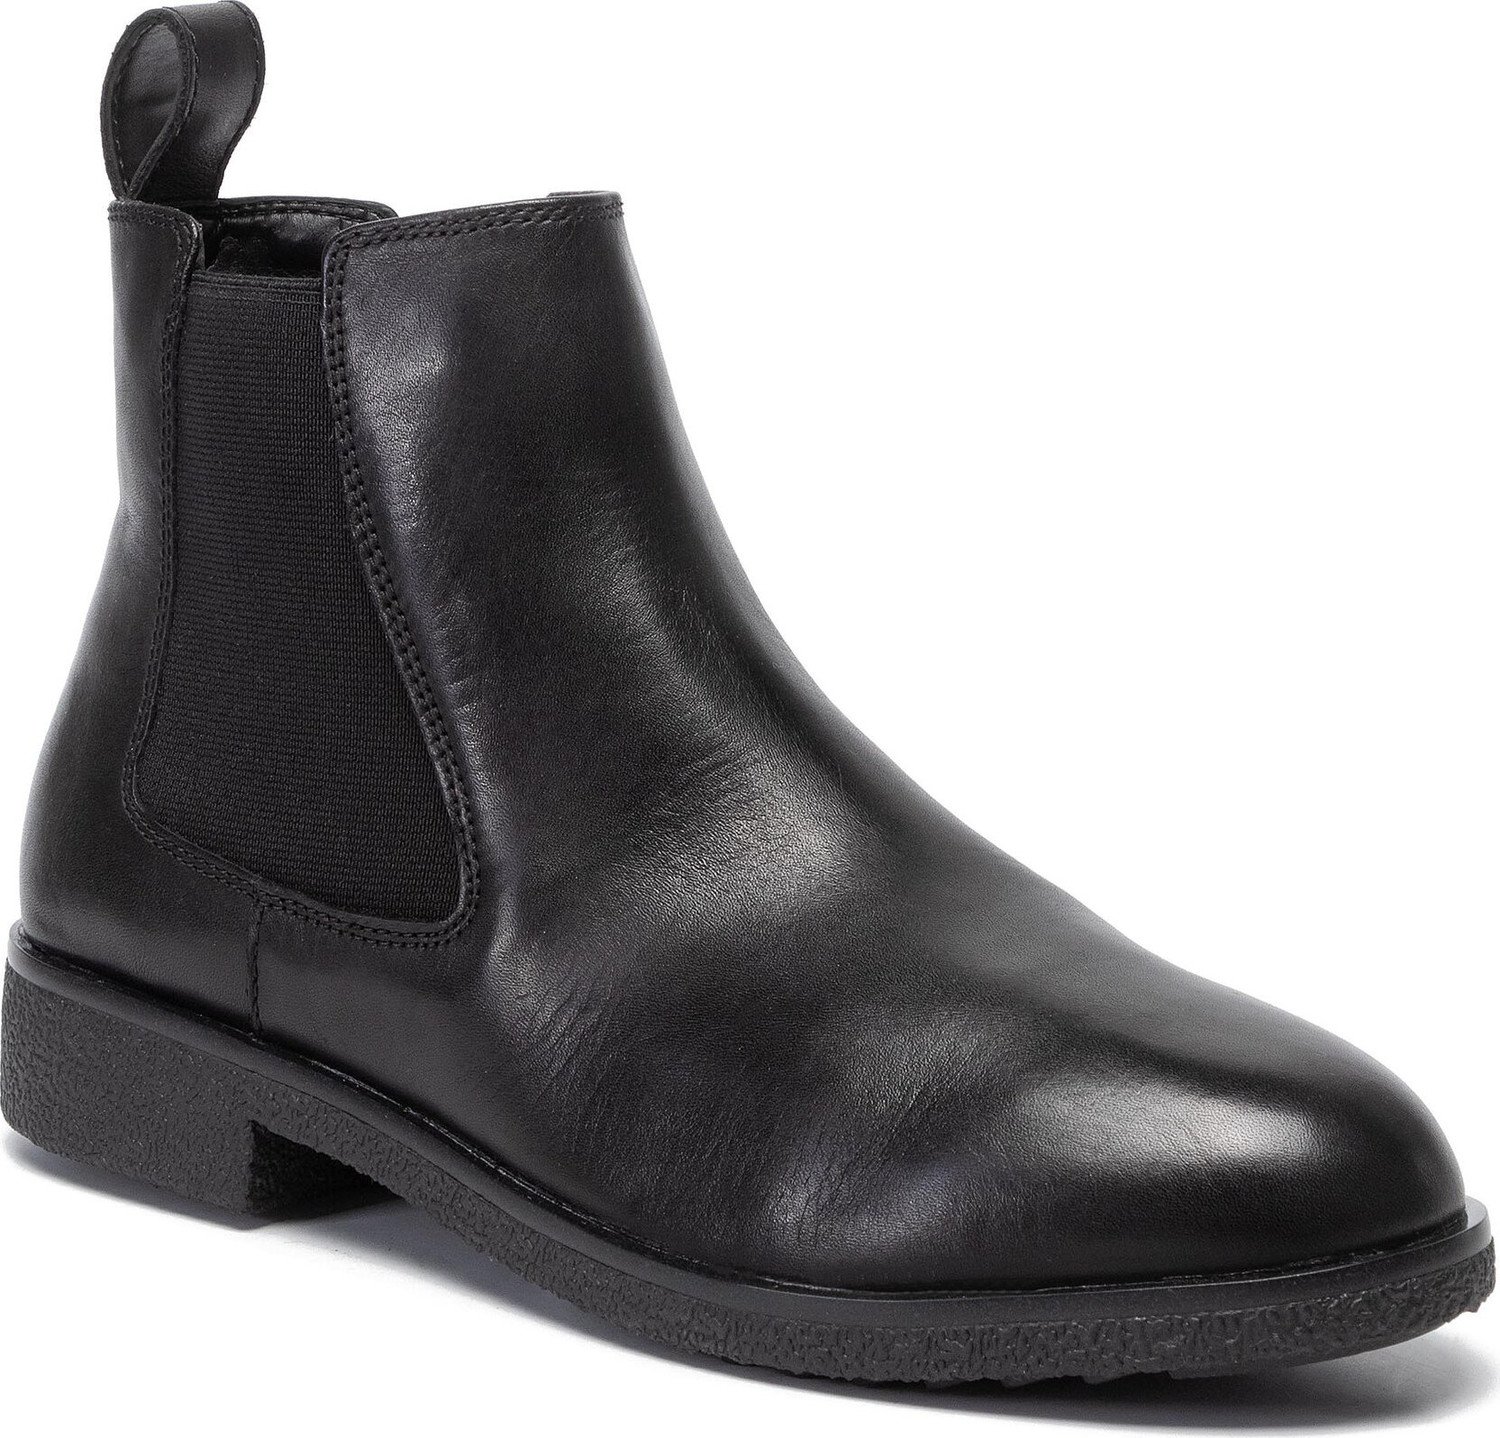 Kotníková obuv s elastickým prvkem Clarks Griffin Plaza 261431084 Black Leather